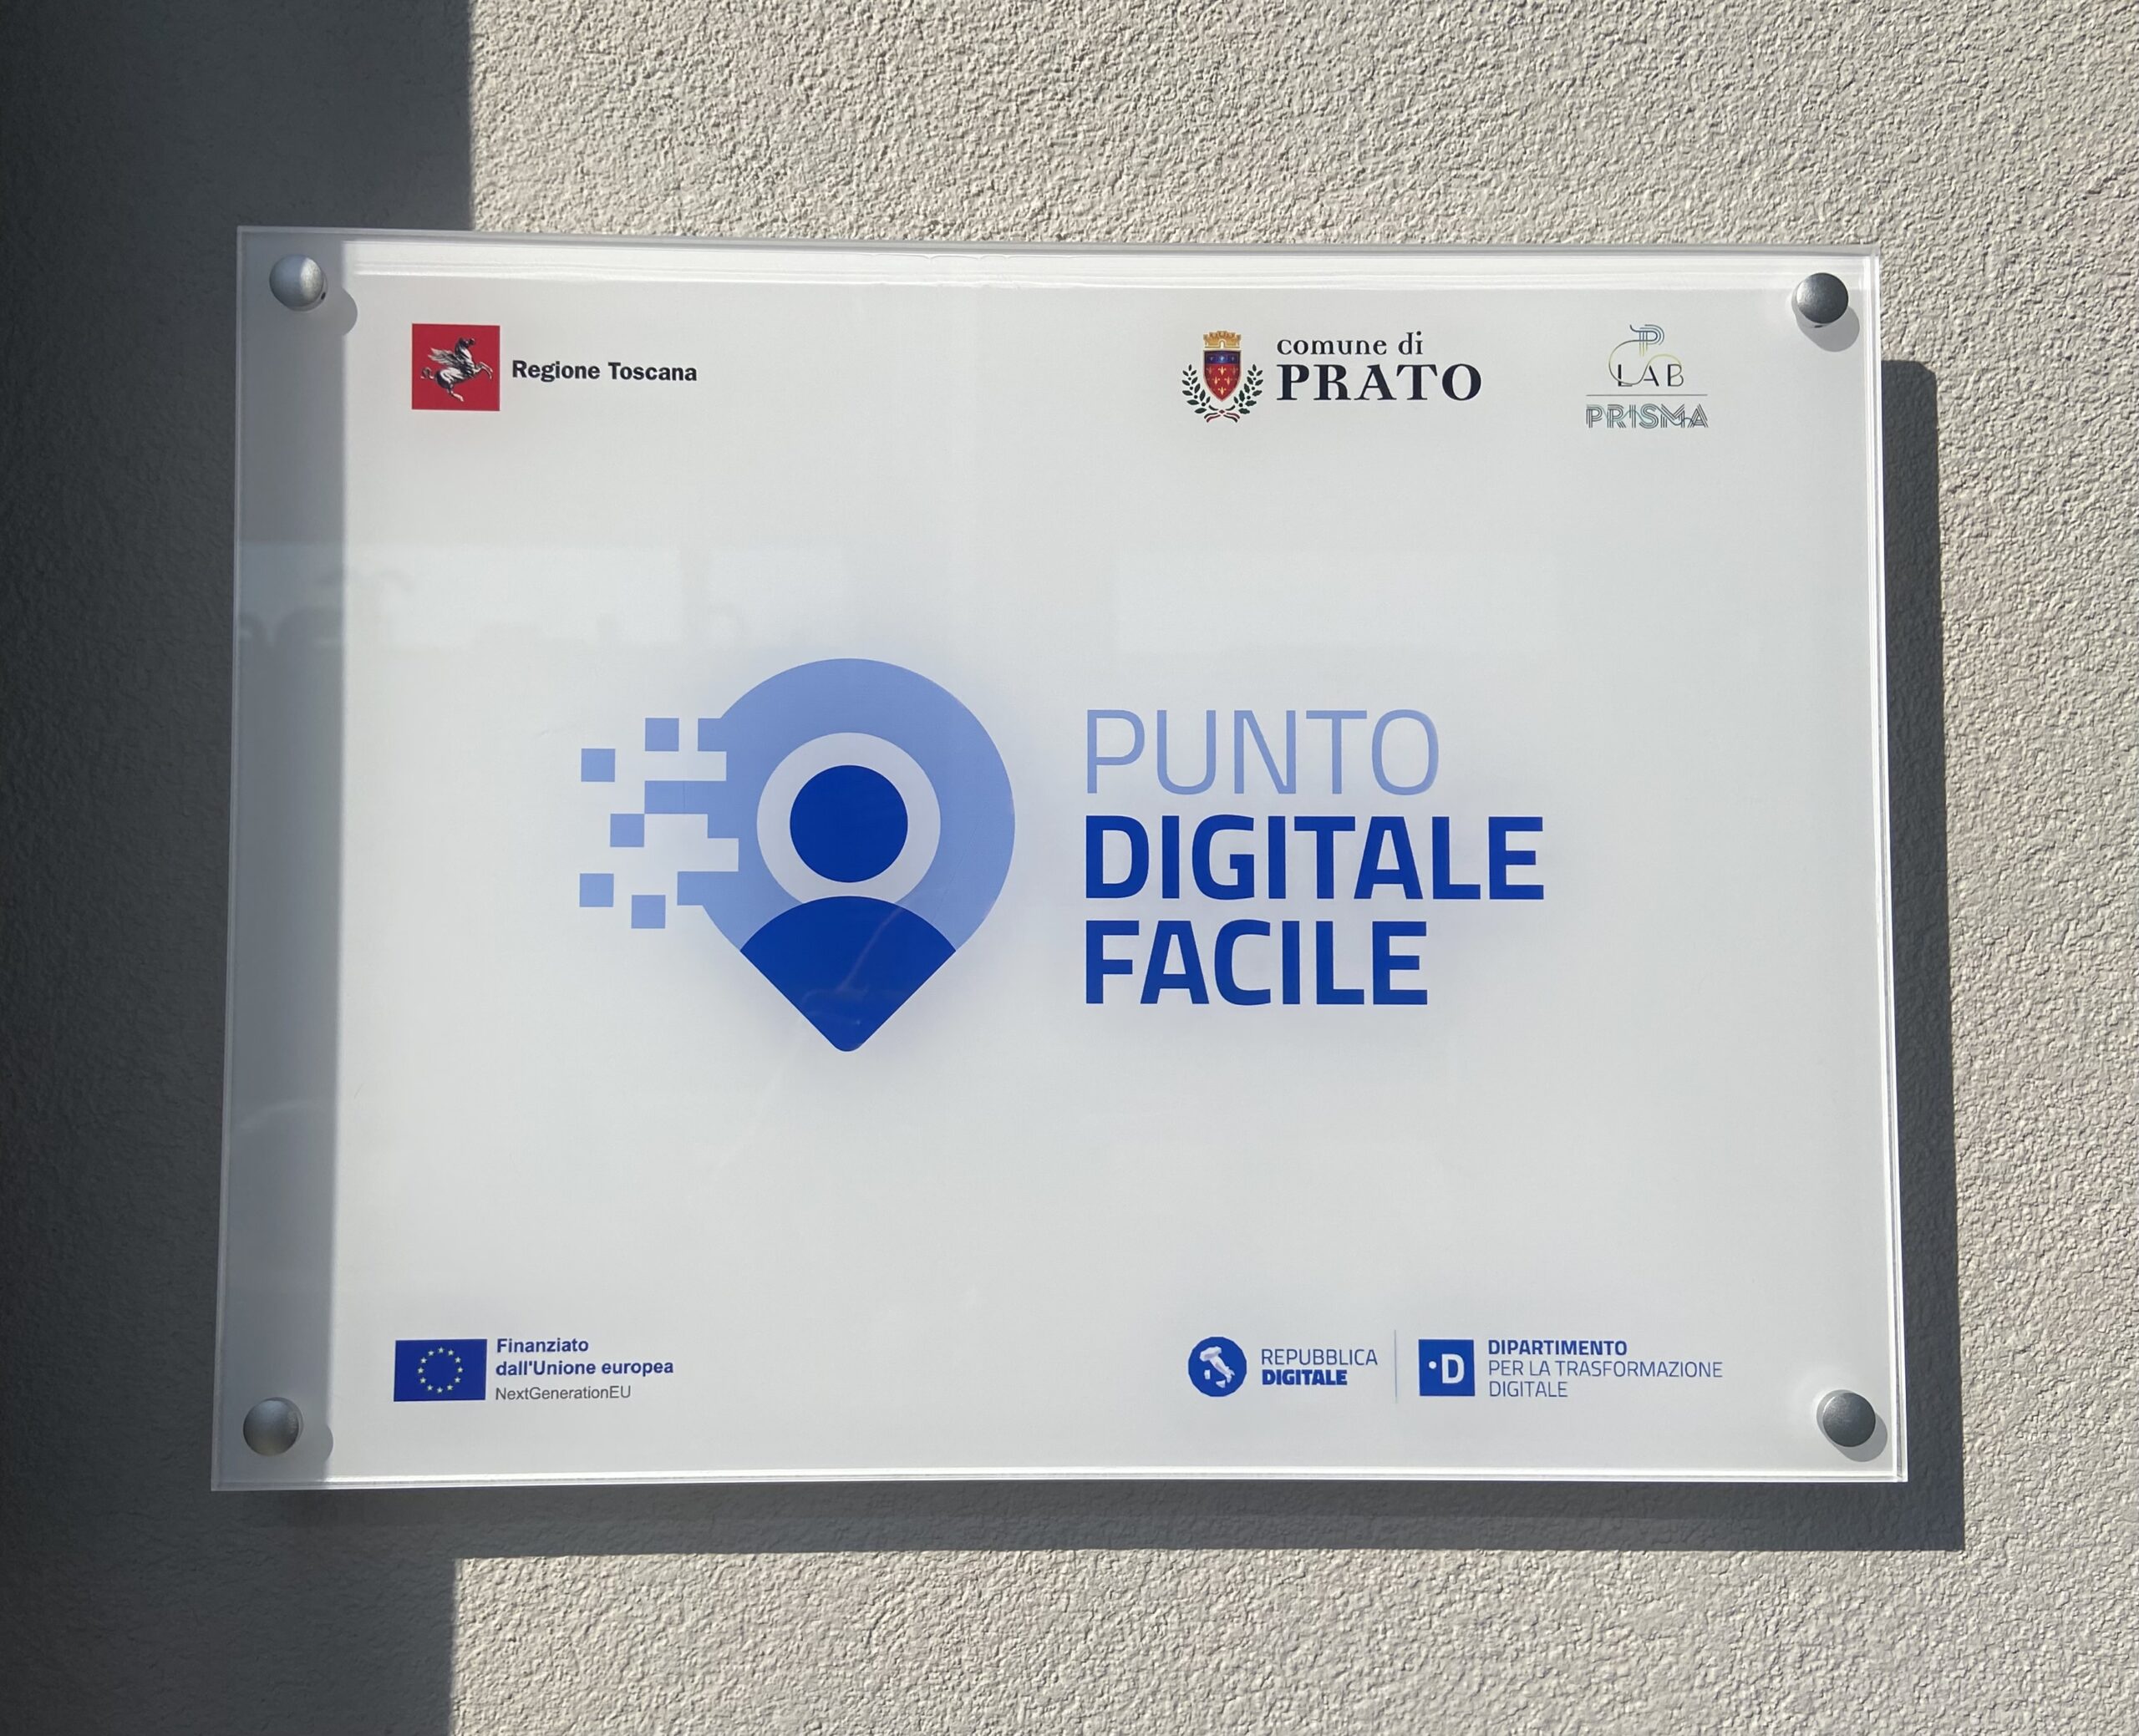 A Prato quattro nuovi Punti Digitale Facile per garantire a tutti l’accesso ai servizi in rete